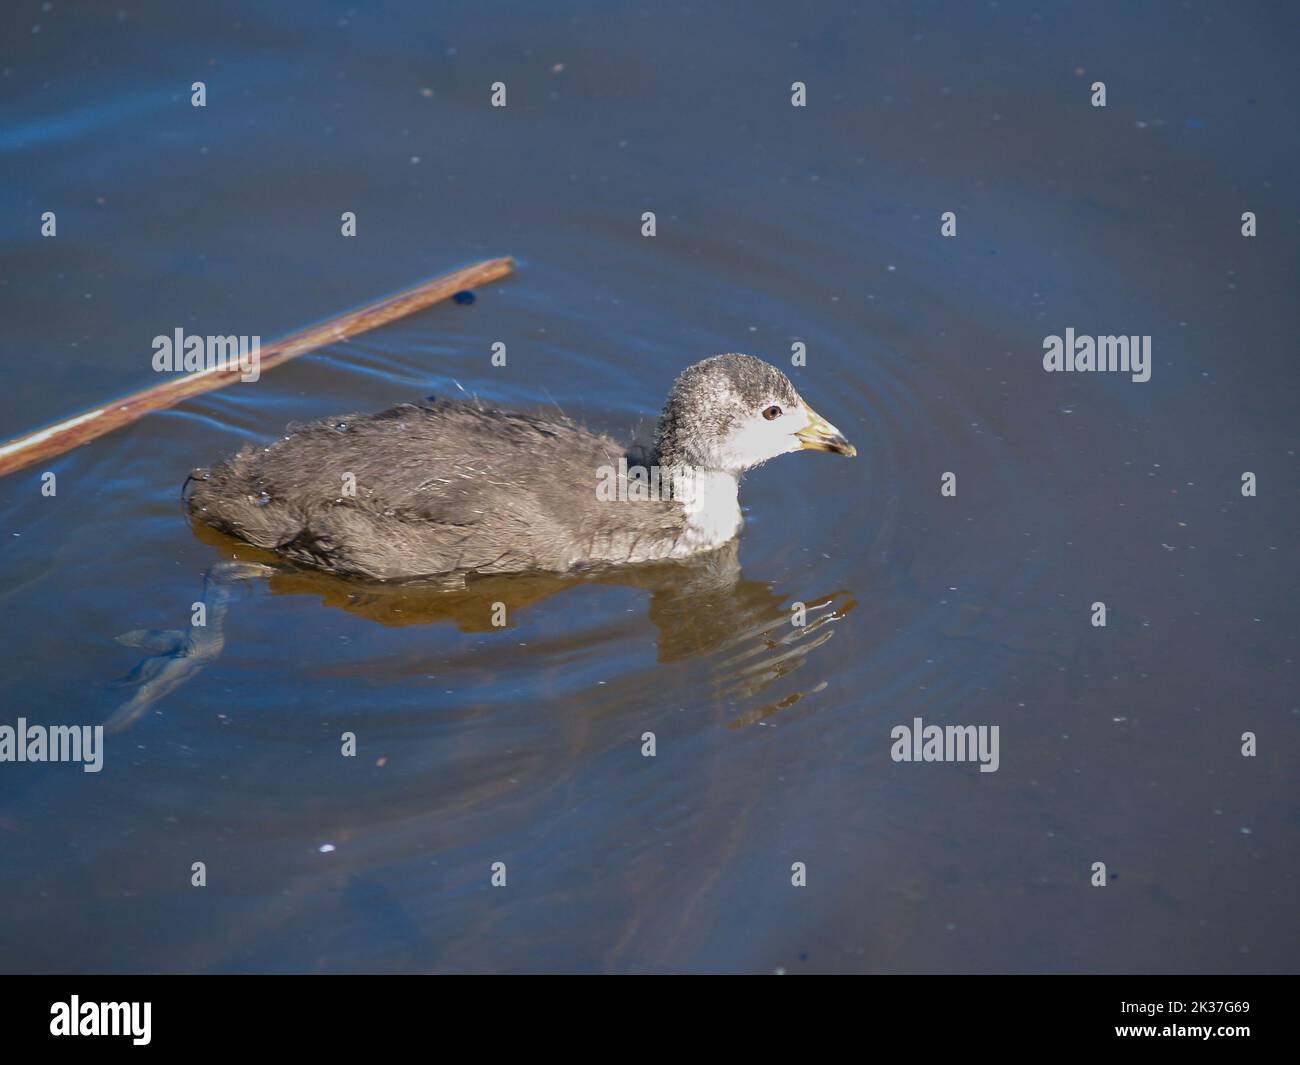 Young pukeko swimming in muddy swamp pond. Stock Photo